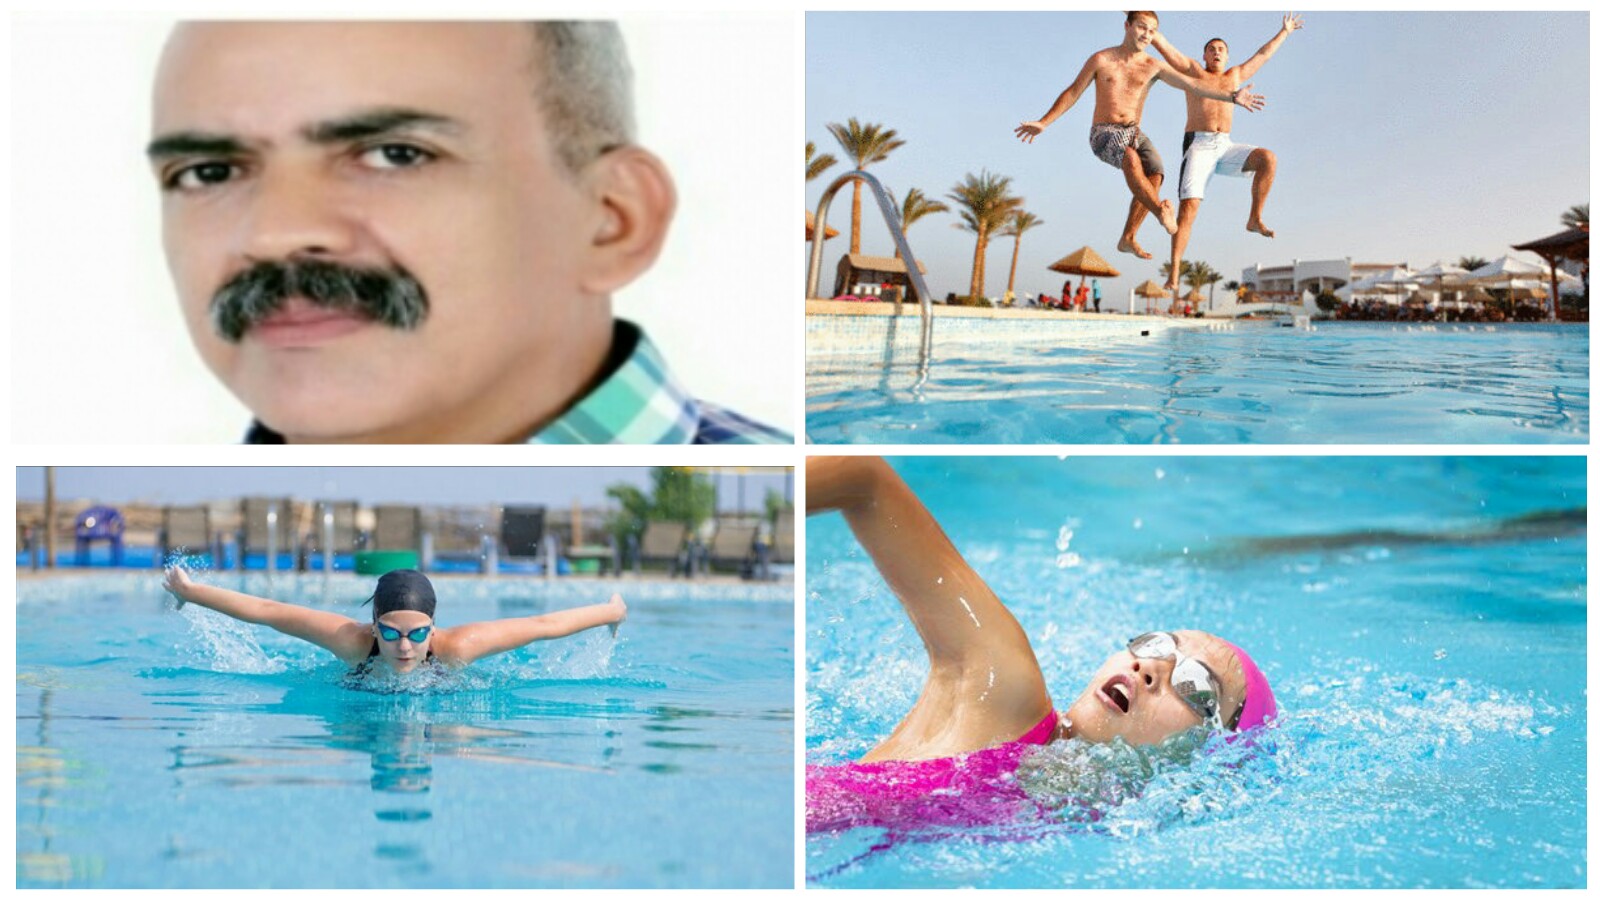 الفوائد الصحية للسباحة موضوع الحلقة 29 من سلسلة ” صحة و رياضة” التي يعدها الأستاذ محمد البصيري لقراء تاكسي نيوز